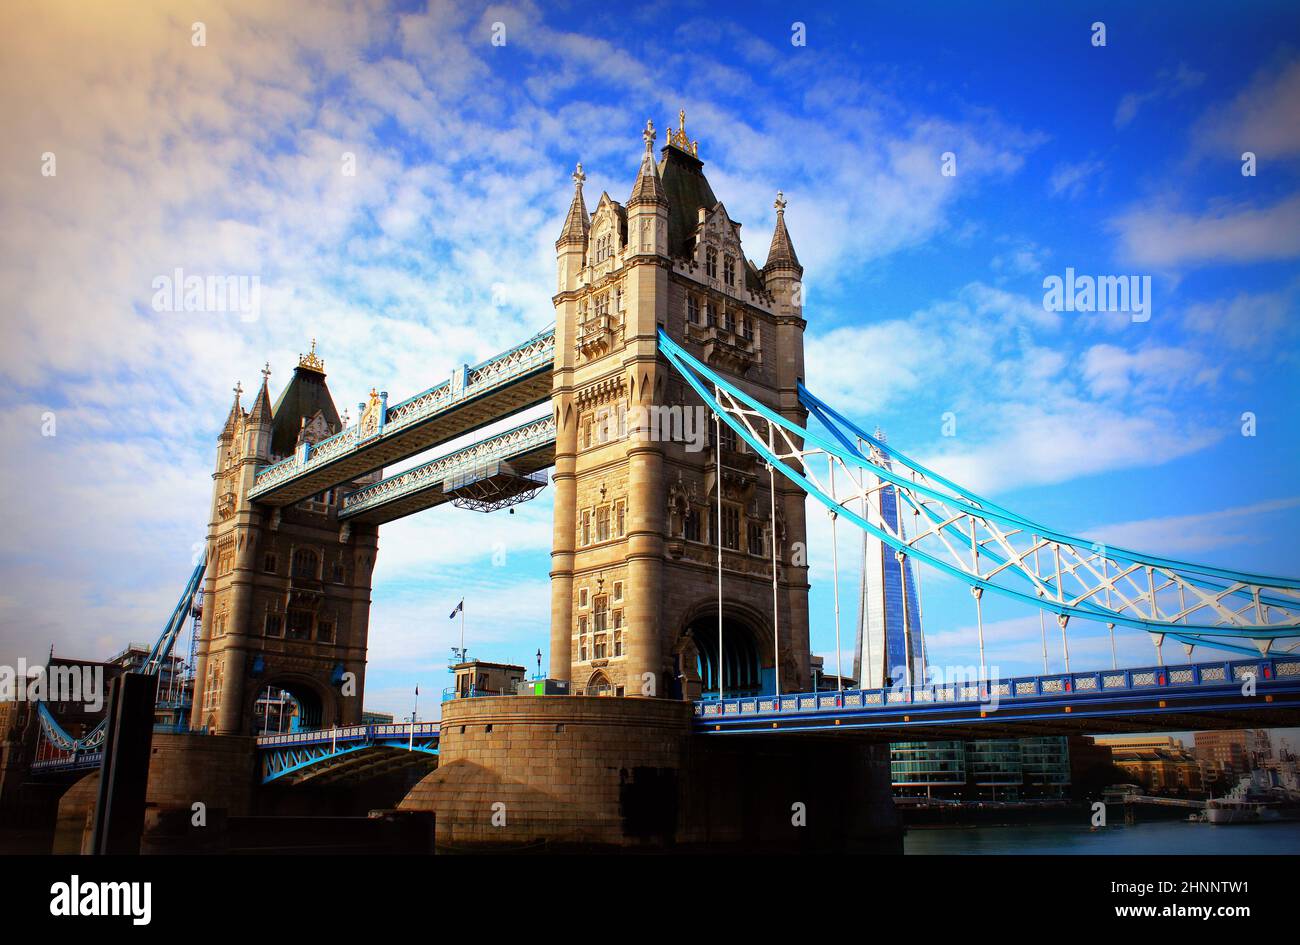 Tower Bridge à Londres, au Royaume-Uni. Coucher du soleil avec de beaux nuages. L'ouverture du pont-levis. L'un des symboles anglais Banque D'Images